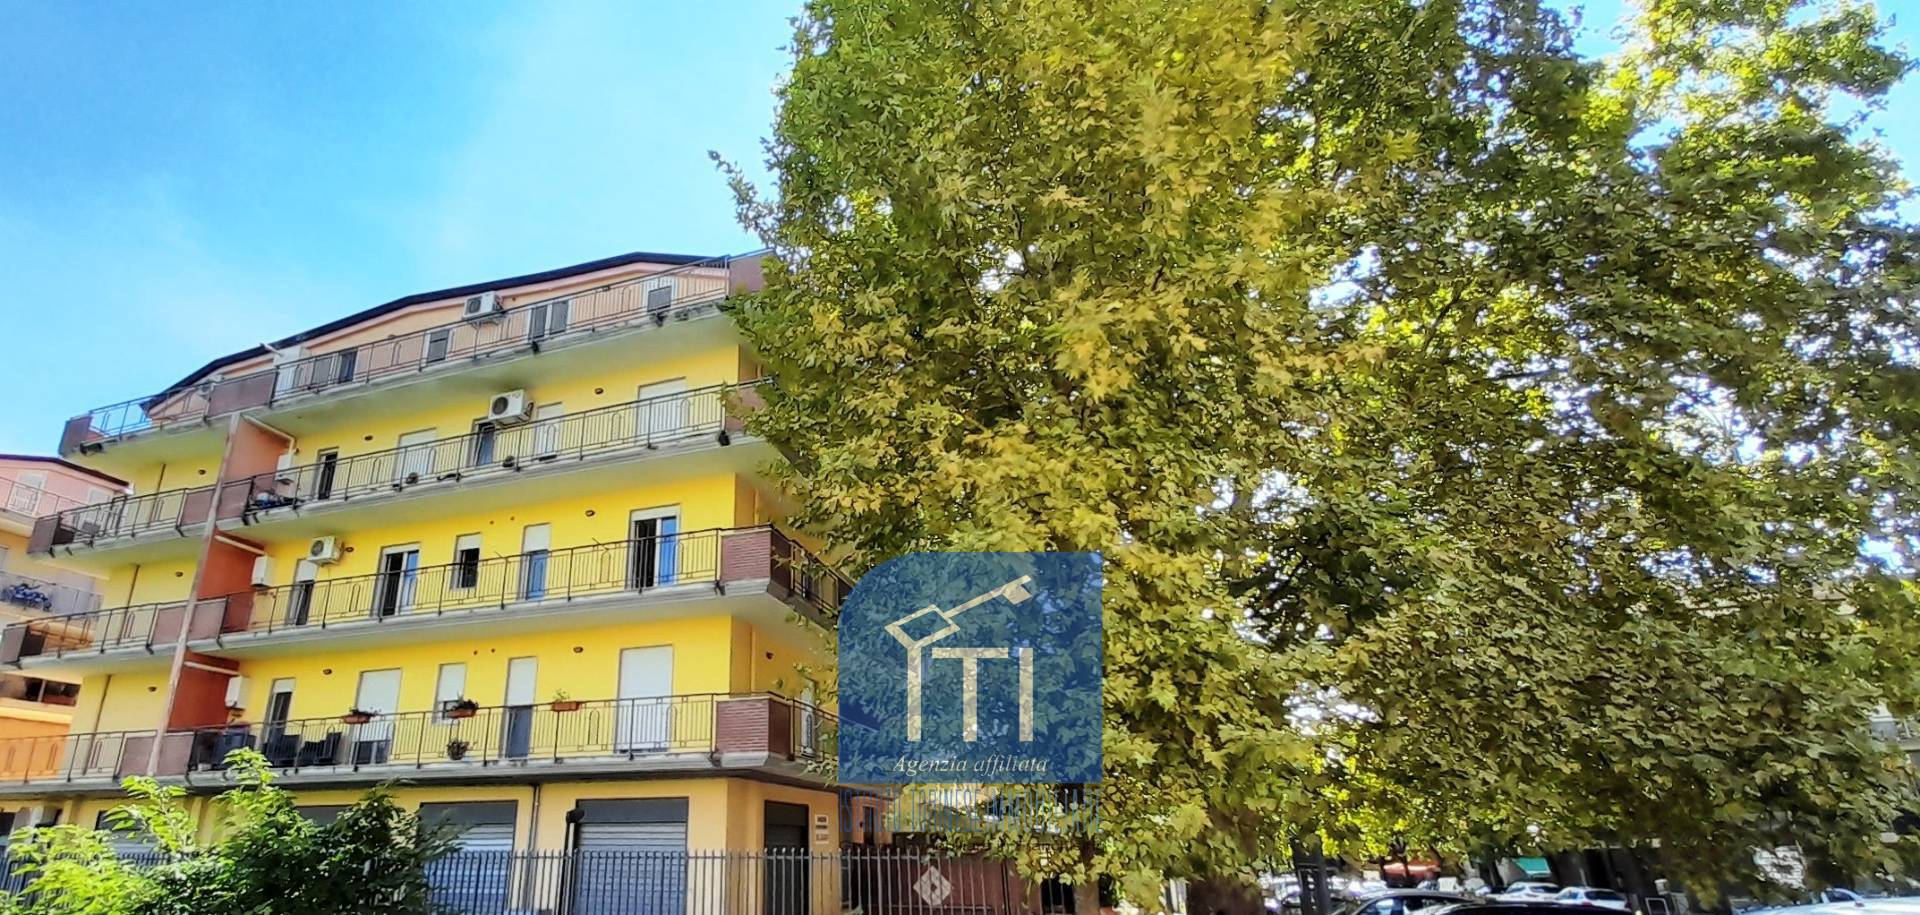 Appartamento in affitto a Cassino, 8 locali, prezzo € 550 | CambioCasa.it